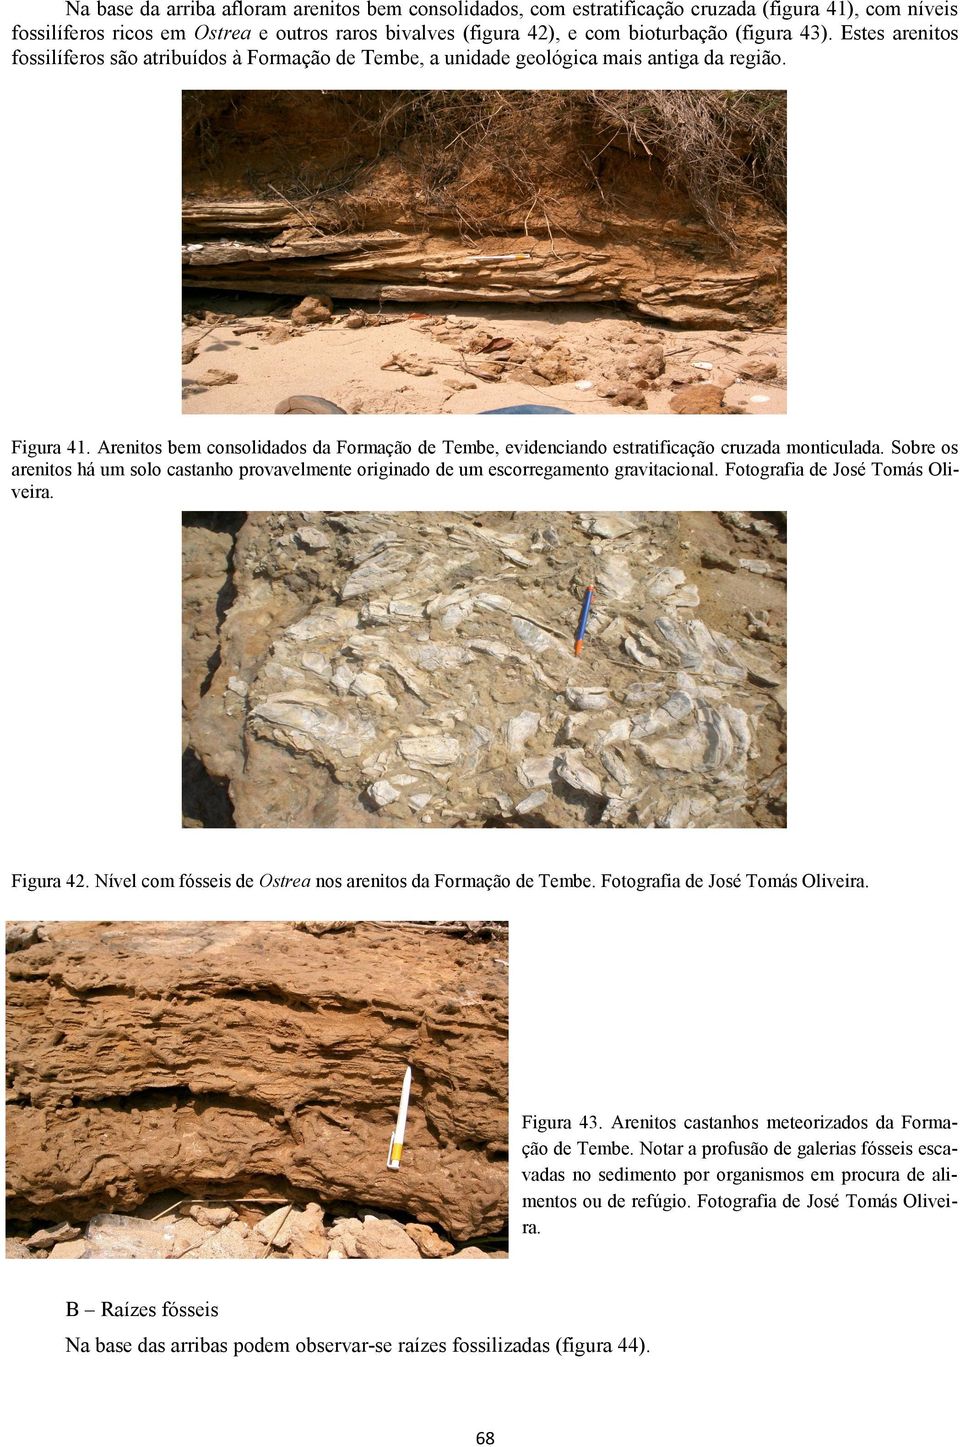 Arenitos bem consolidados da Formação de Tembe, evidenciando estratificação cruzada monticulada. Sobre os arenitos há um solo castanho provavelmente originado de um escorregamento gravitacional.